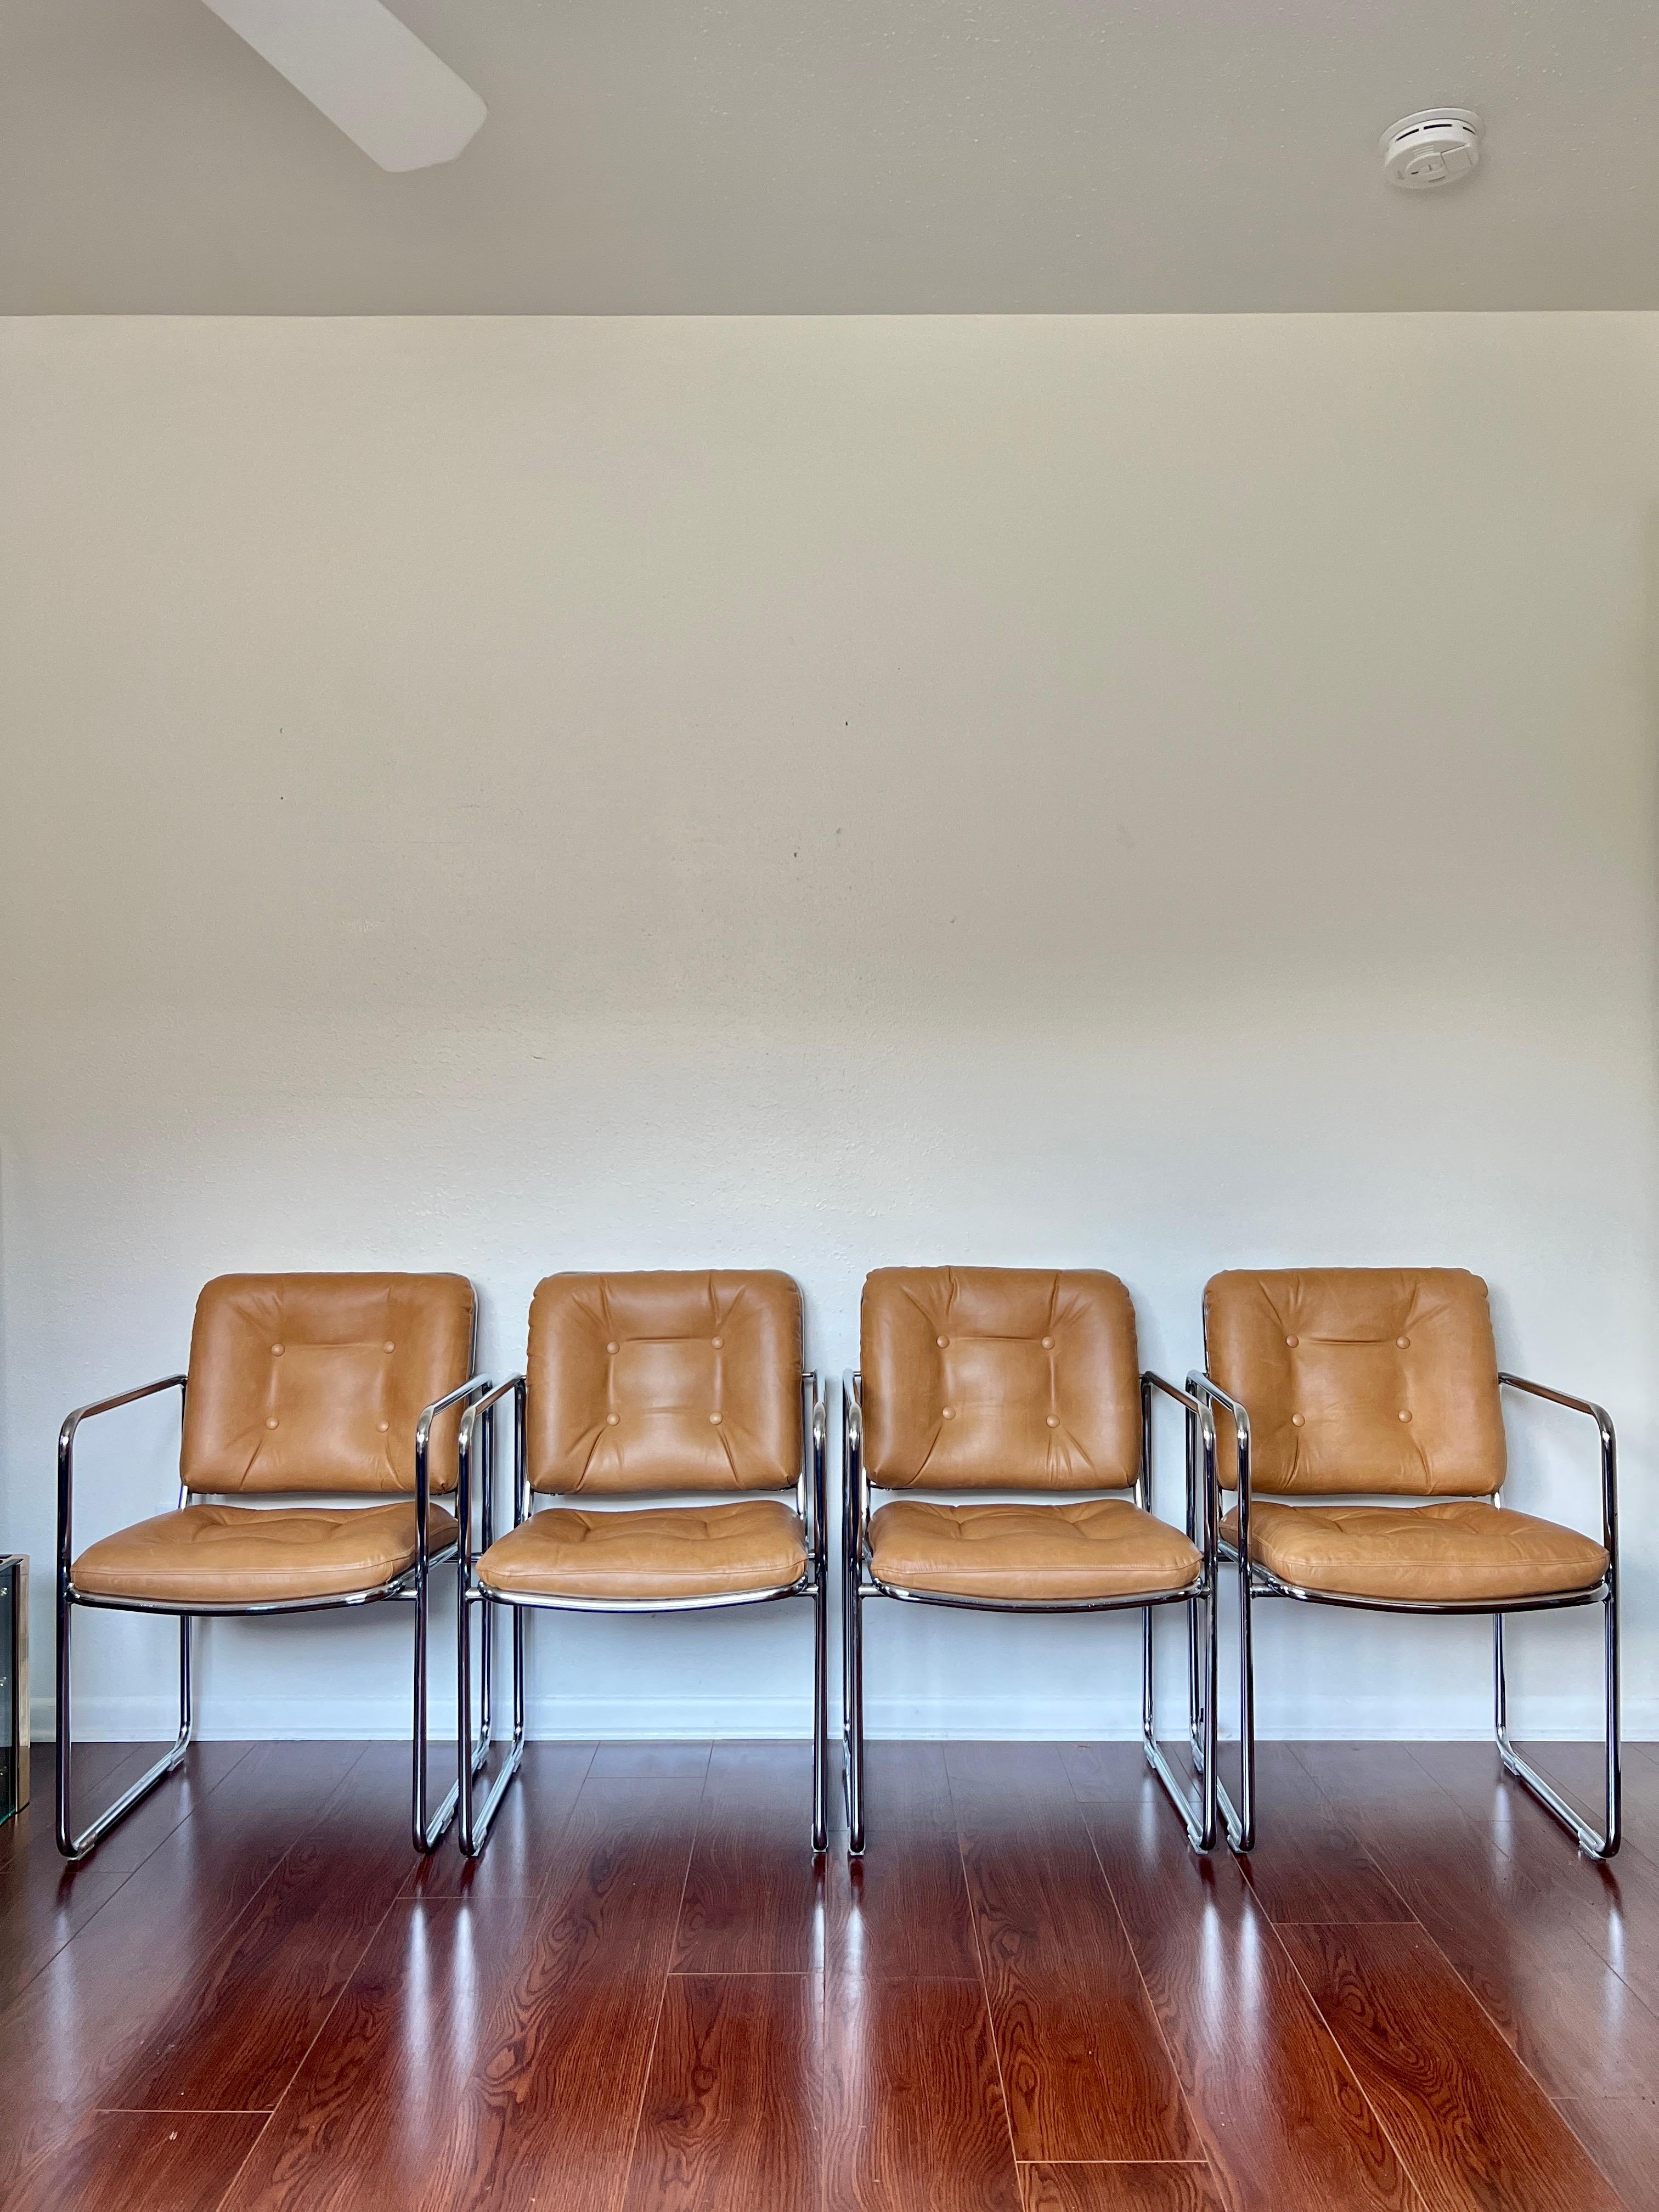 Vintage 1960s Mid-Century Modern Chrome Tubular Leather Tan Chairs by Chromcast 1